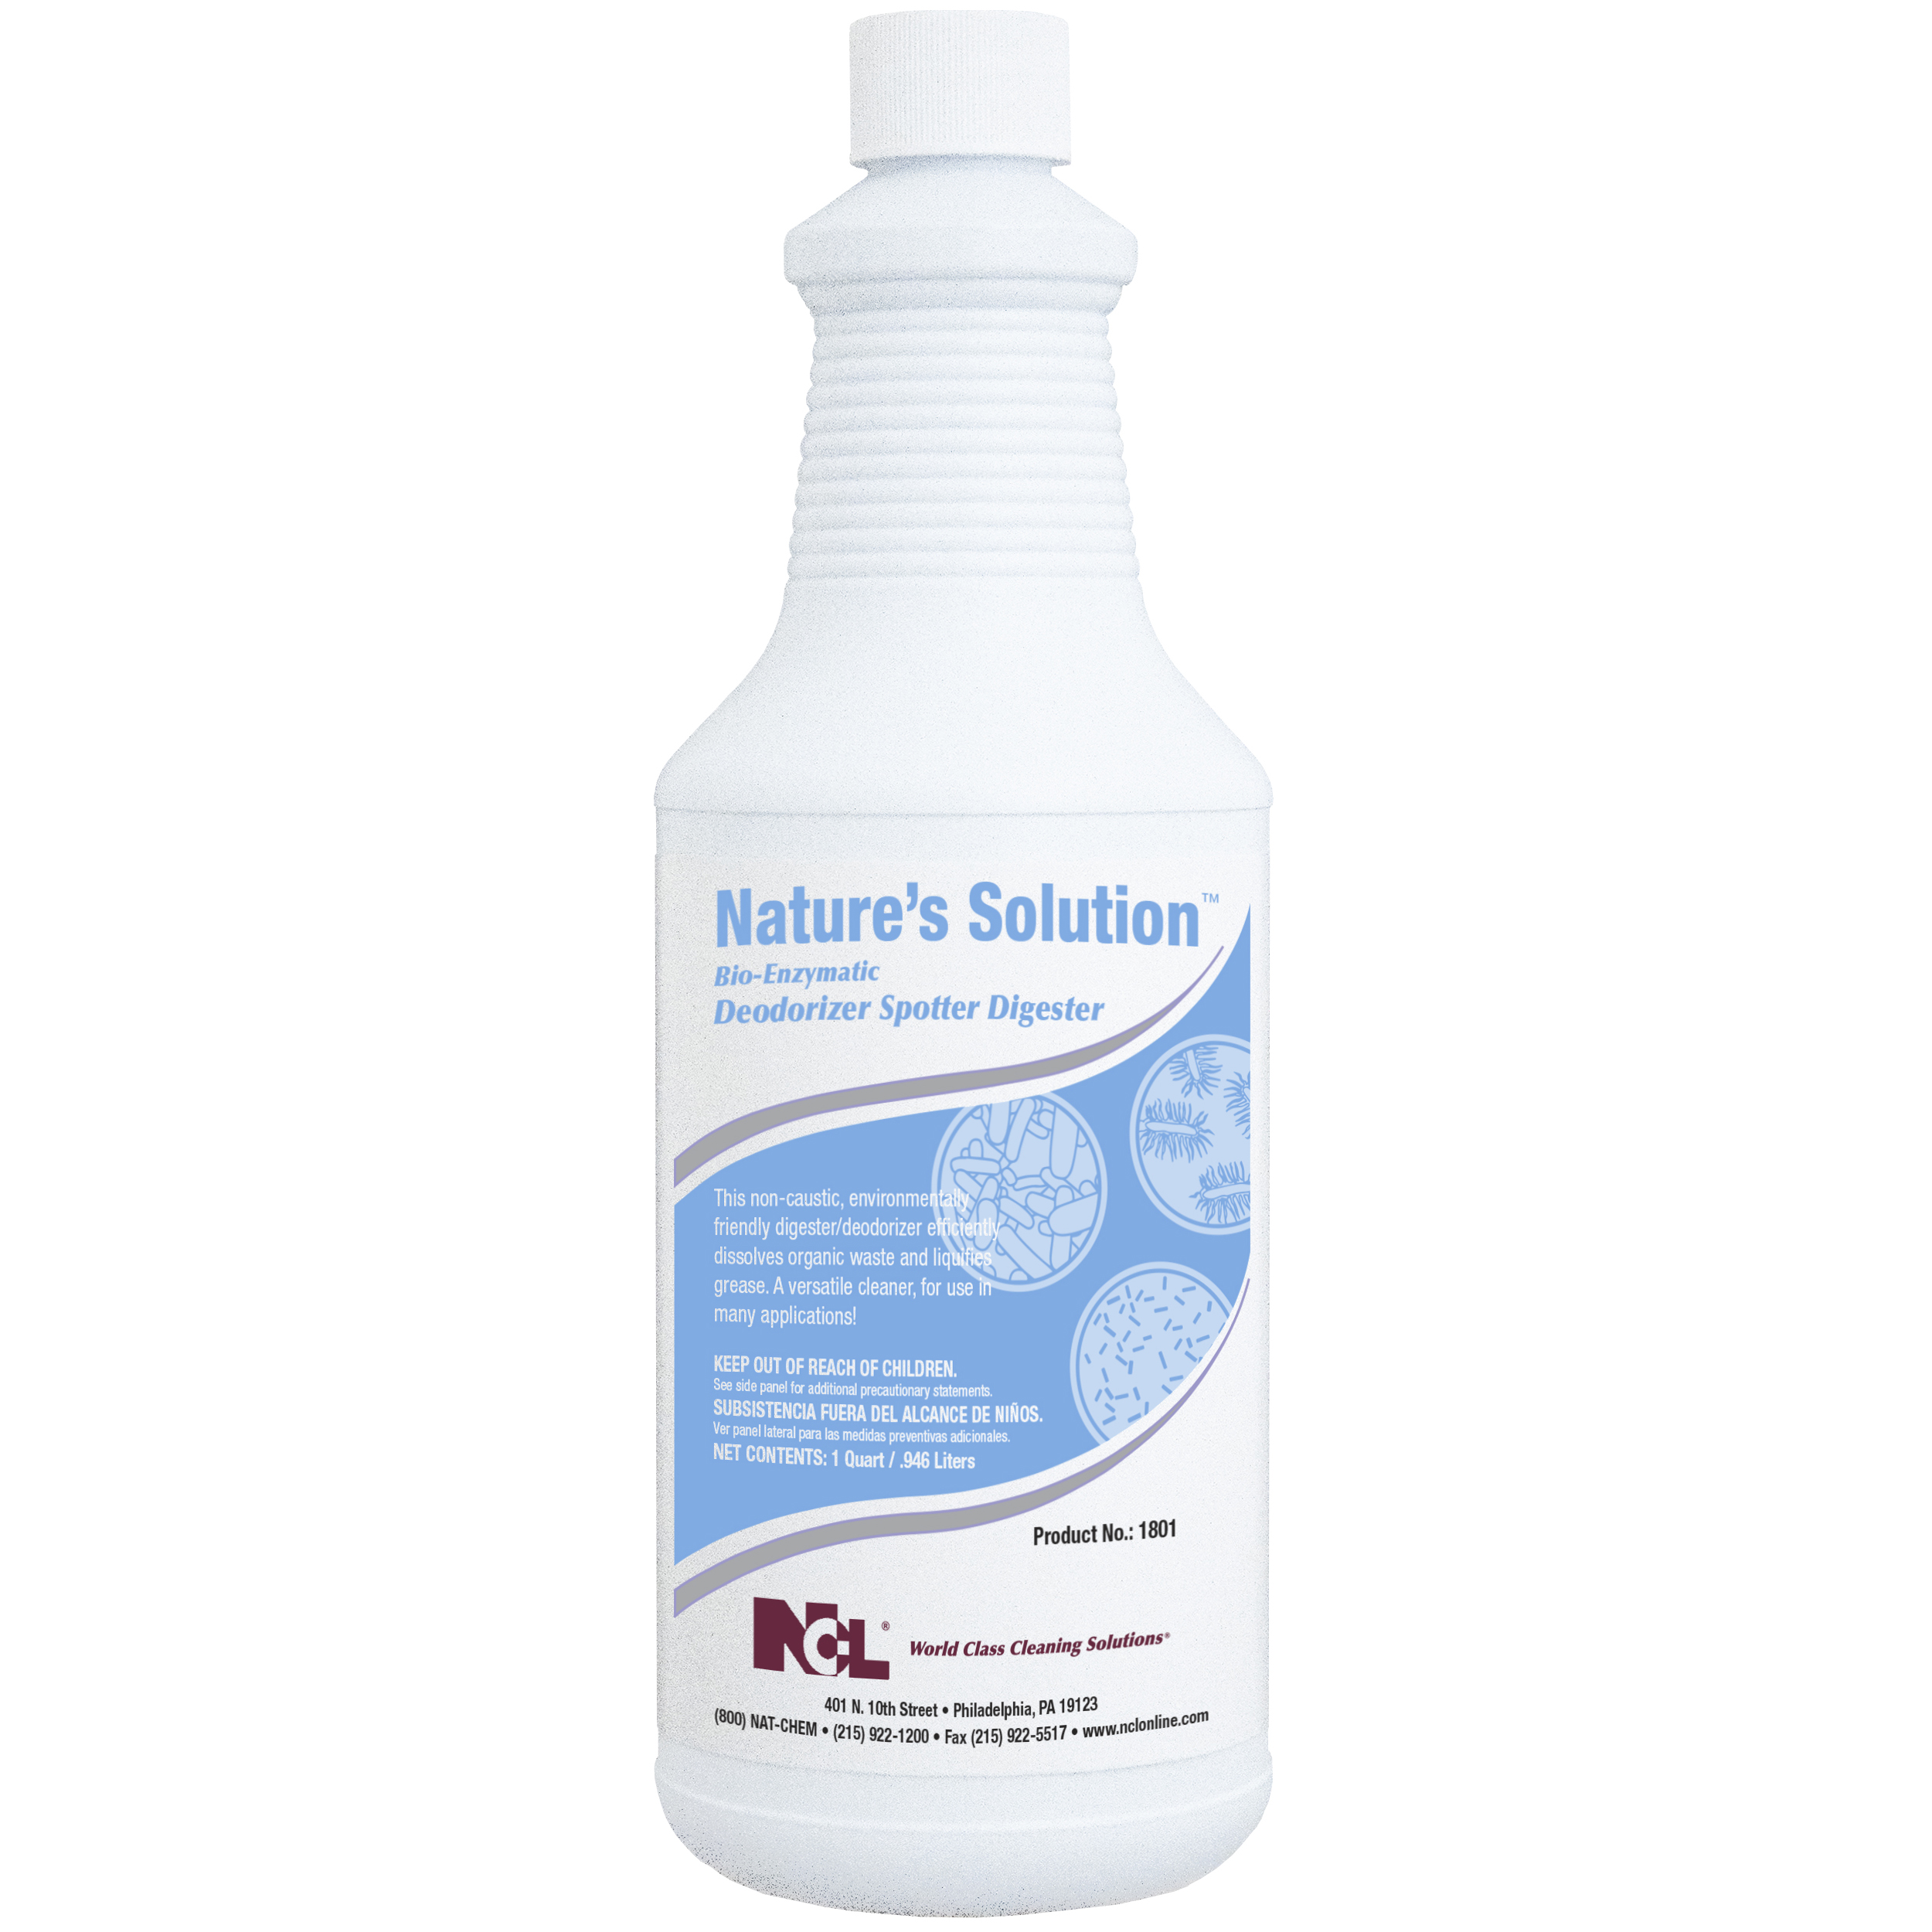  NATURE'S SOLUTION Bio-Enzymatic Deodorizer / Spotter / Digester 12/32 oz (1 Qt.) Case (NCL1801-36) 